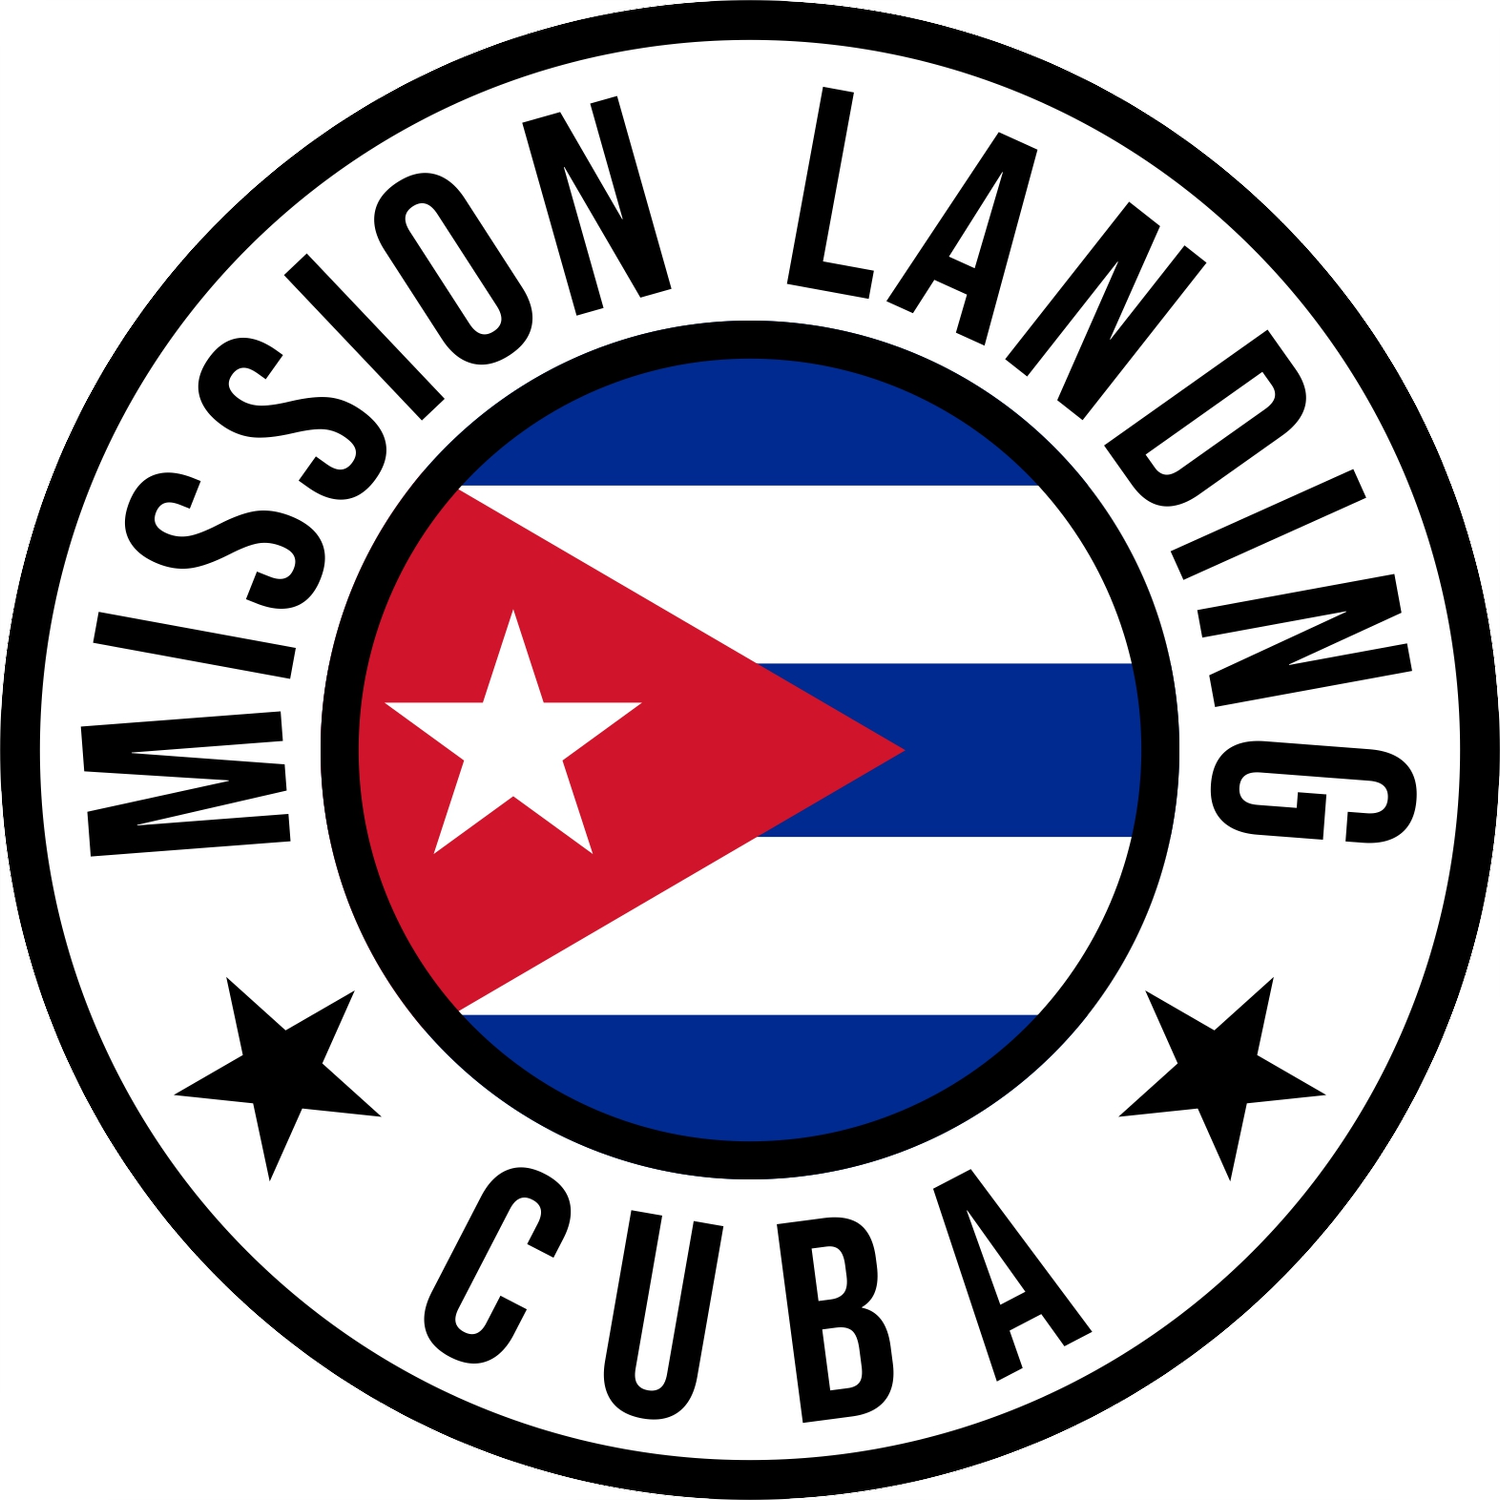 Mission Landing Cuba